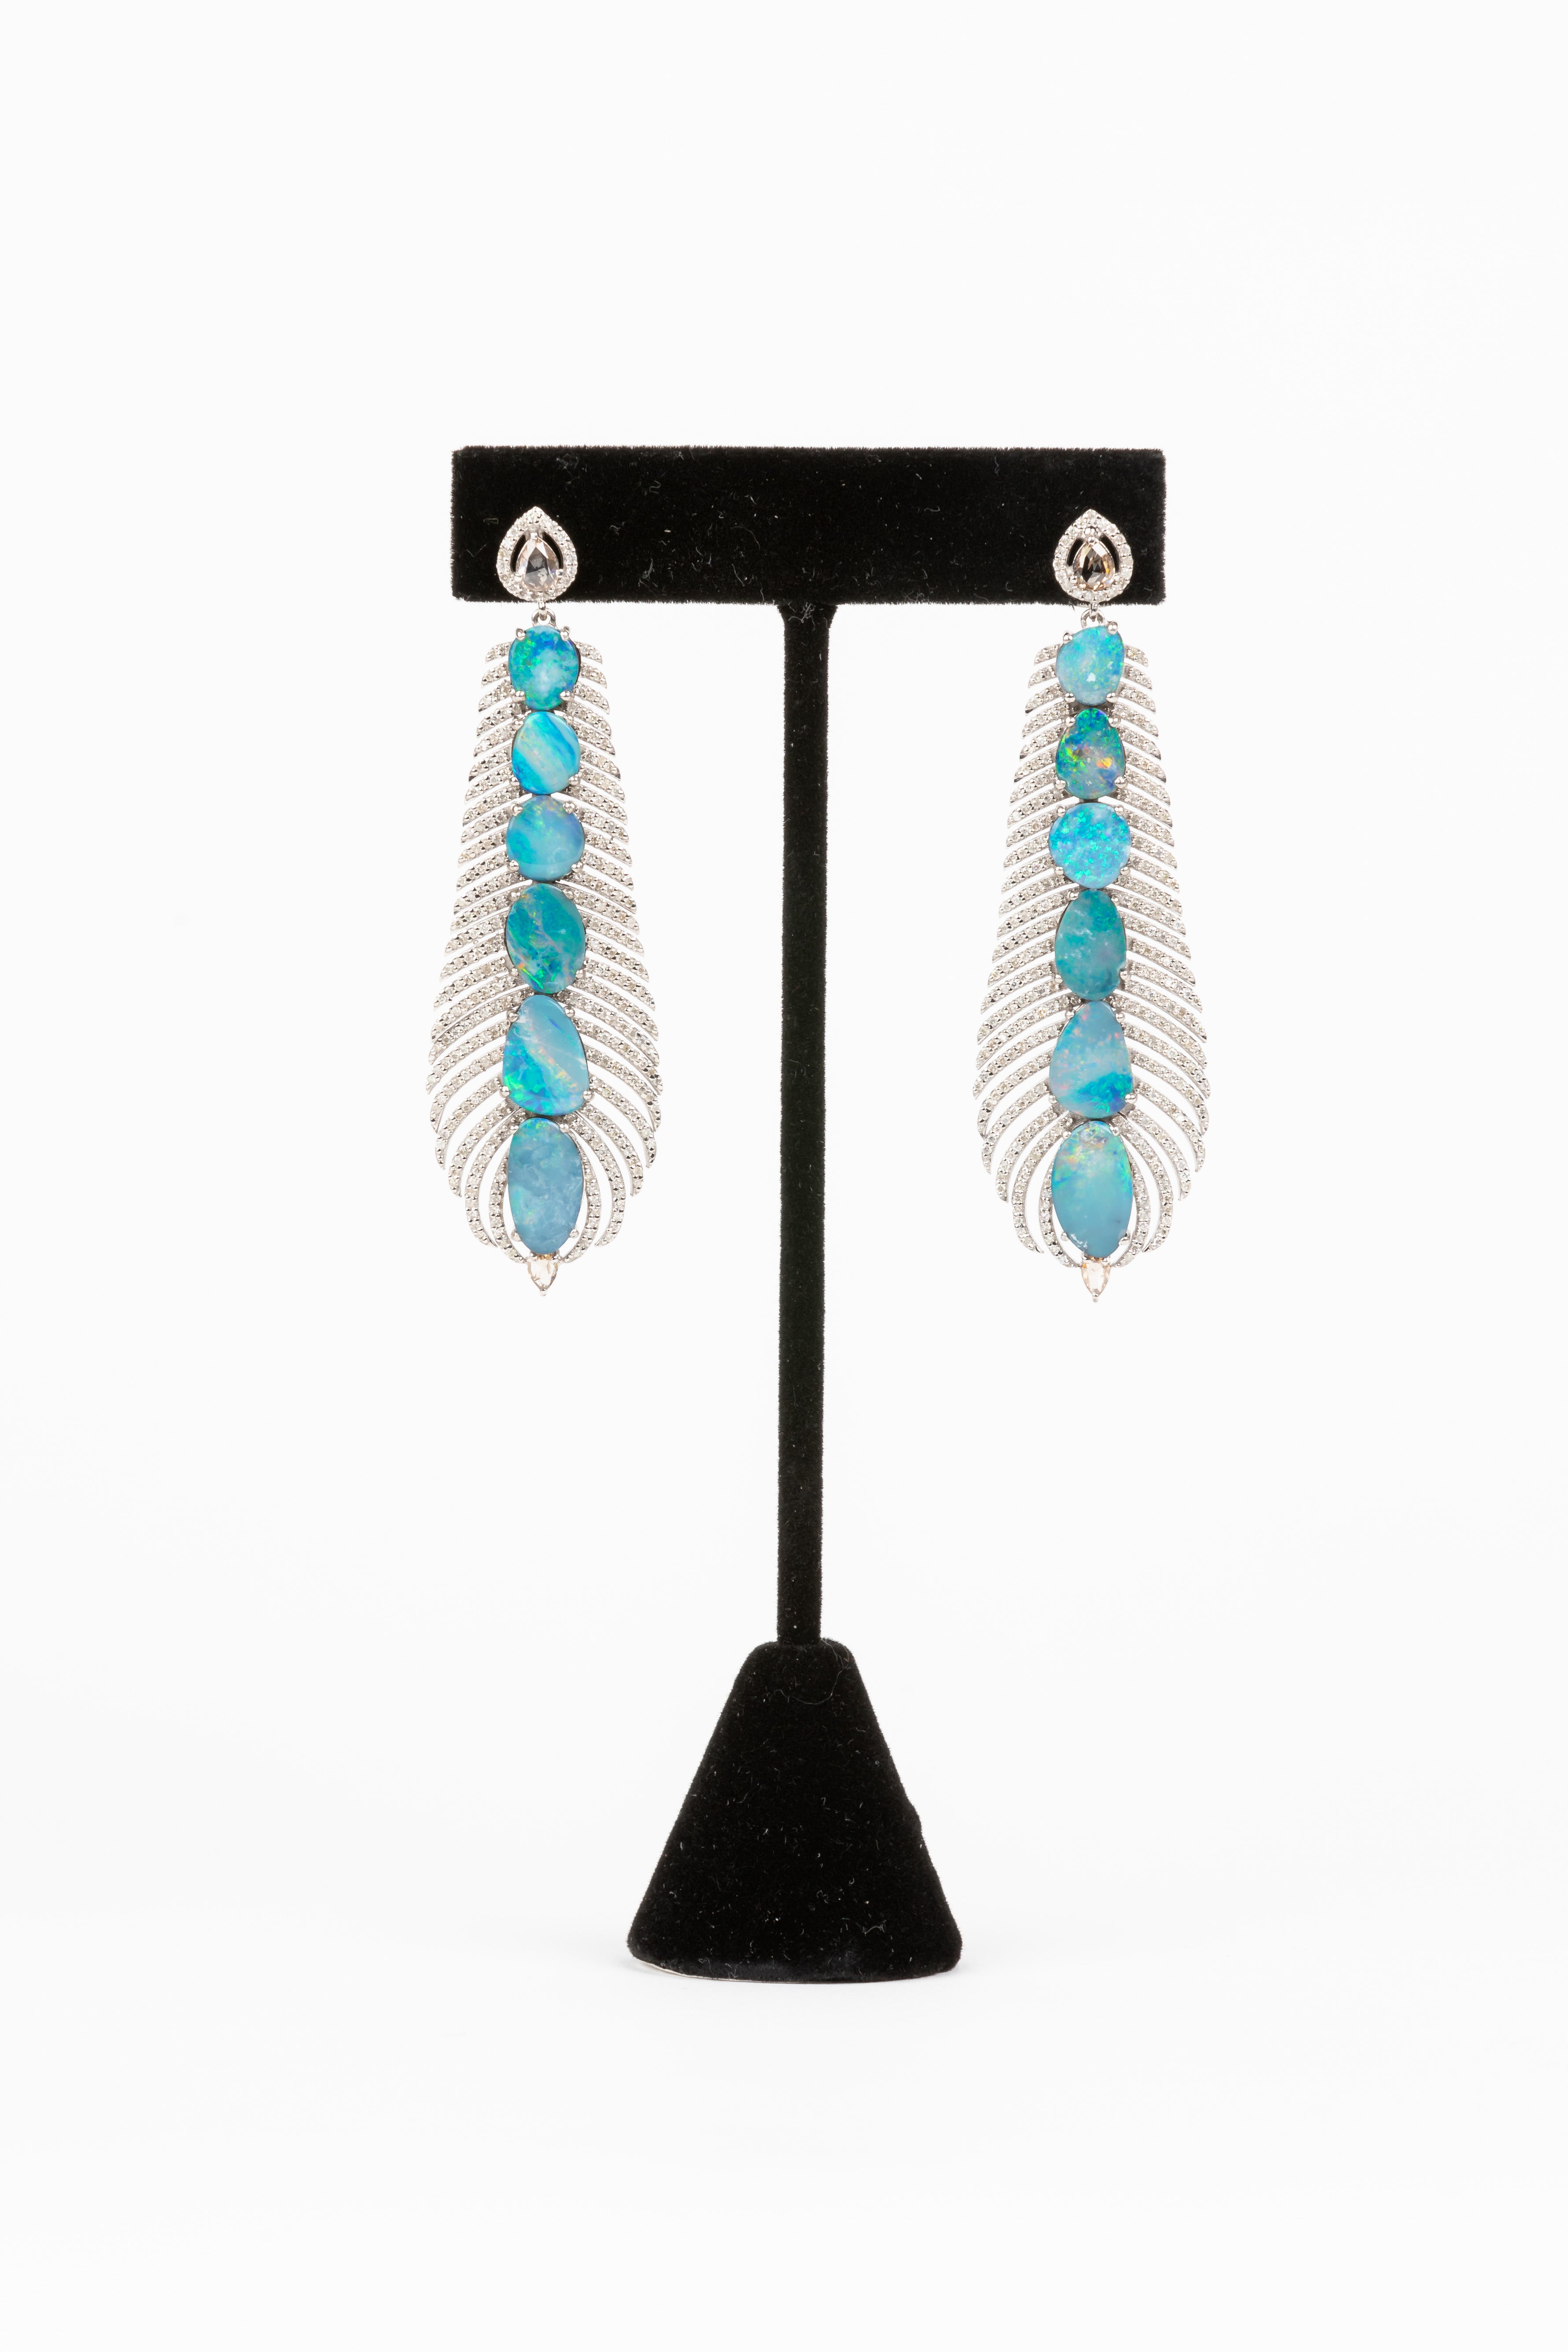 Pave Diamond, Australian Opal Feather Earrings